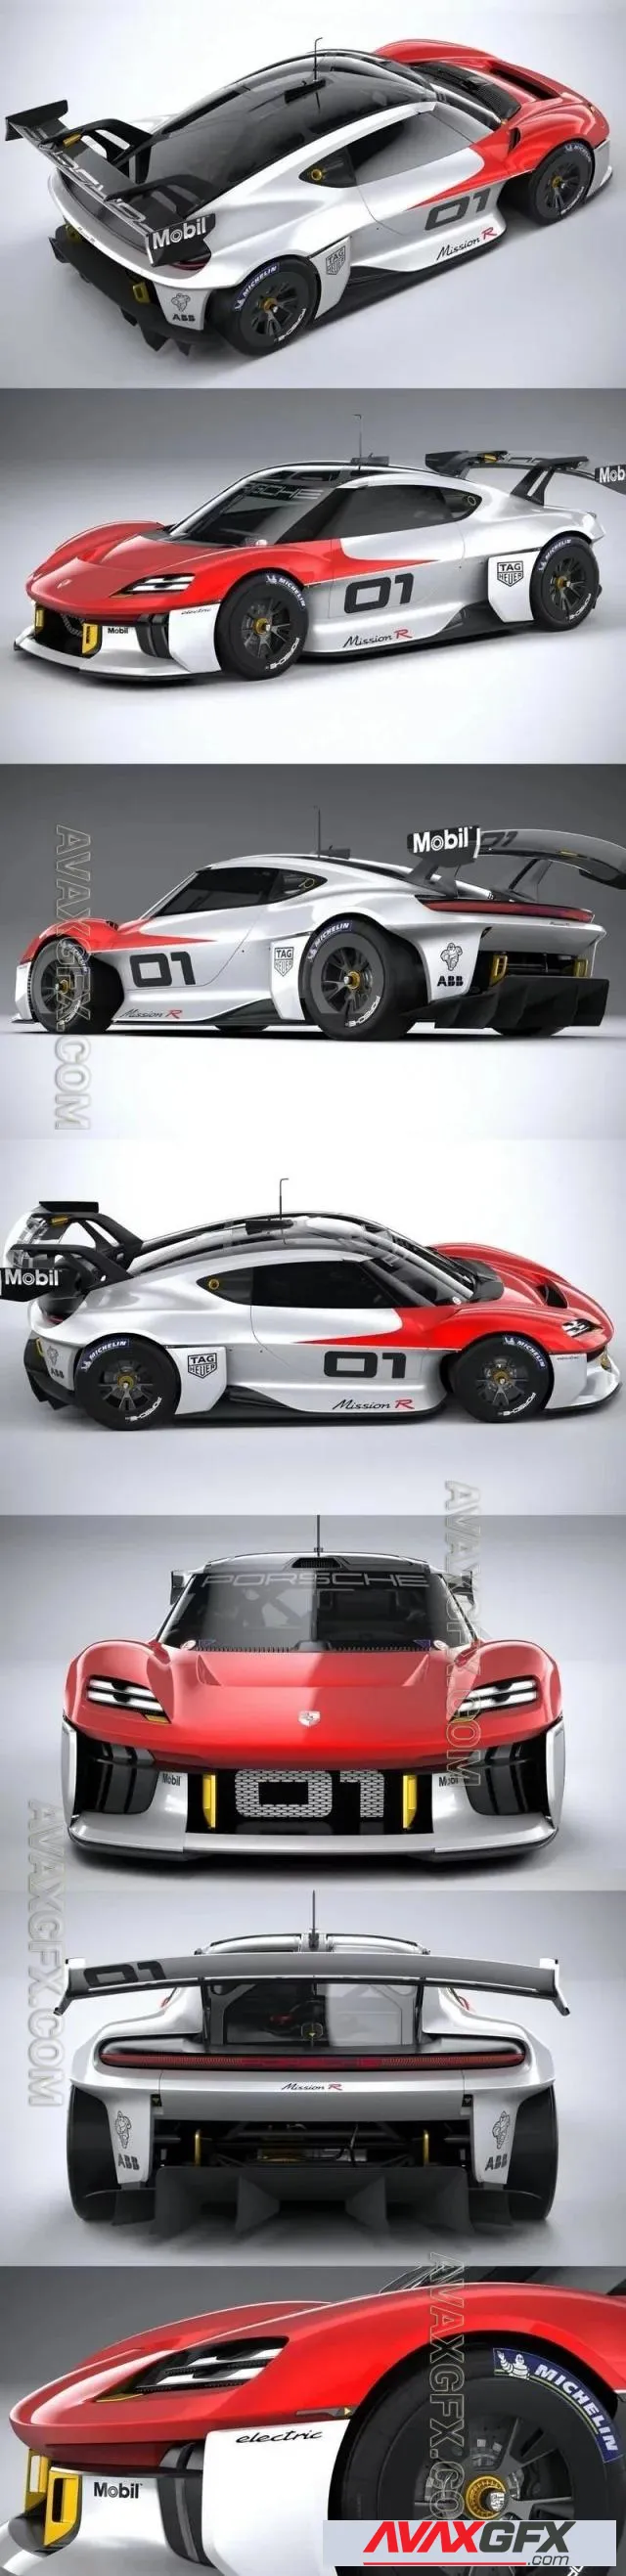 Porsche Mission R 2021 - 3D Model